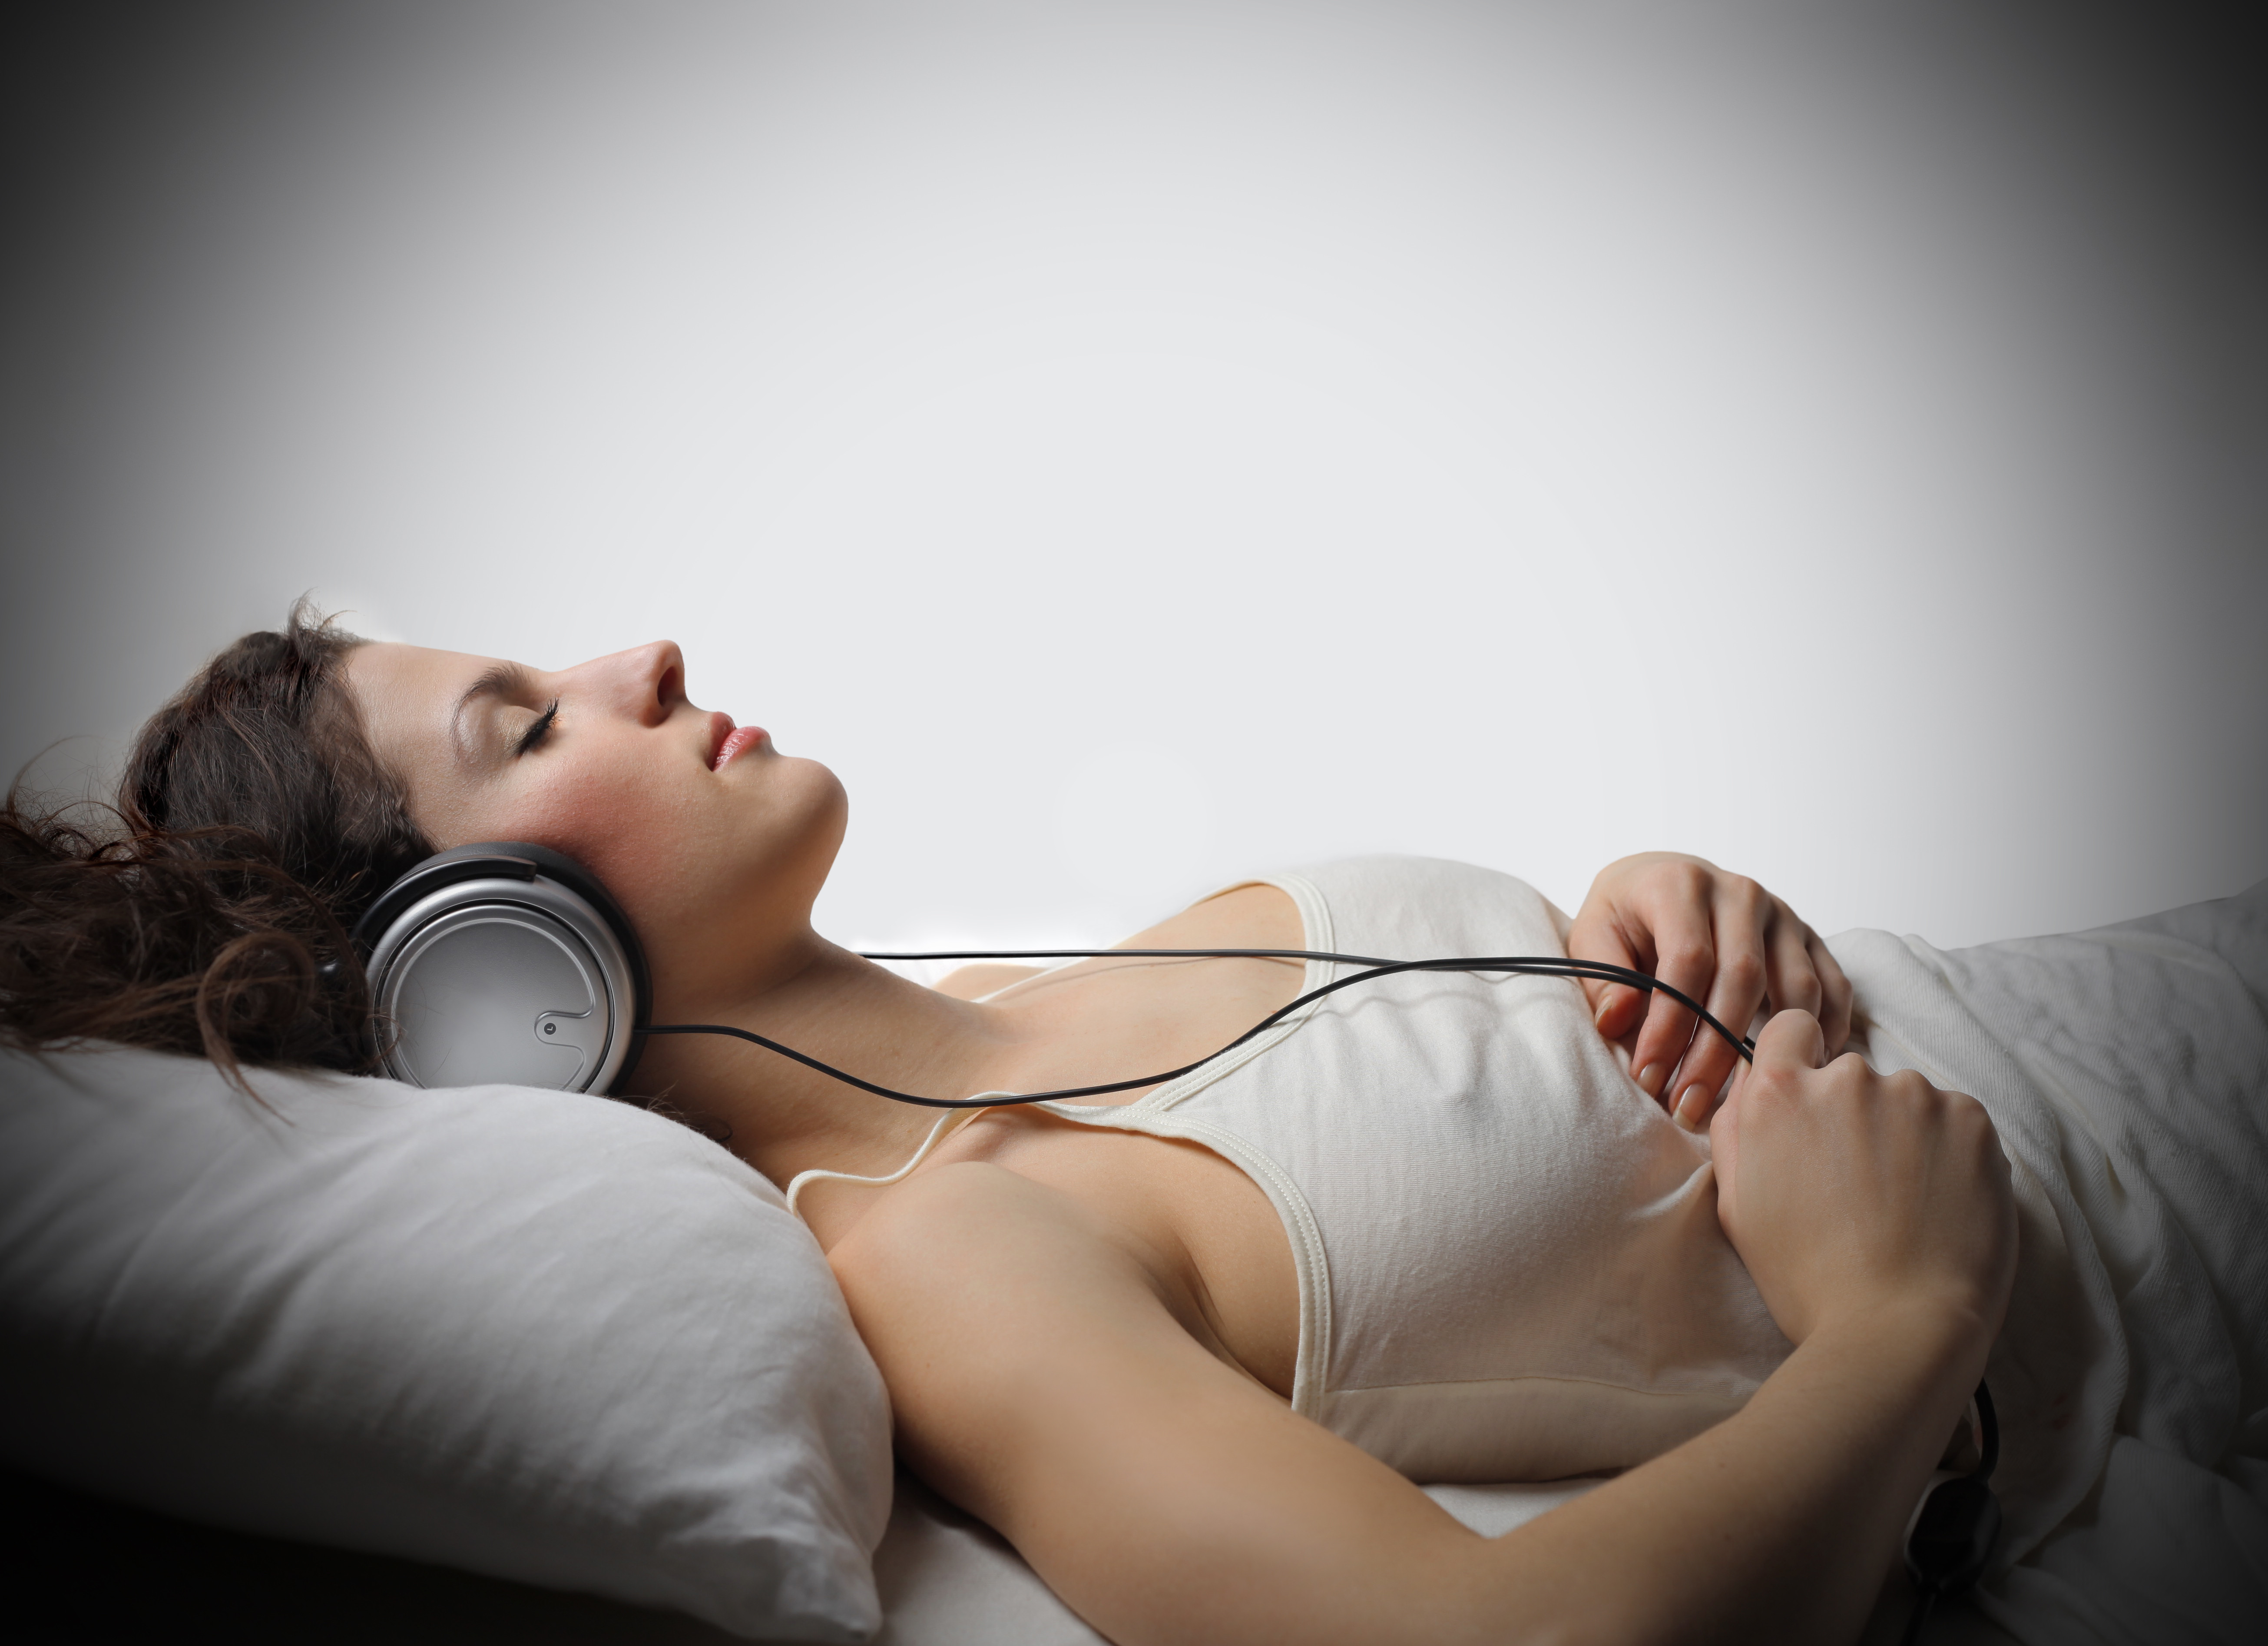 Спи спокойно песня слушать. Медитация в наушниках. Девушка в наушниках отдыхает. Музыкотерапия во сне.